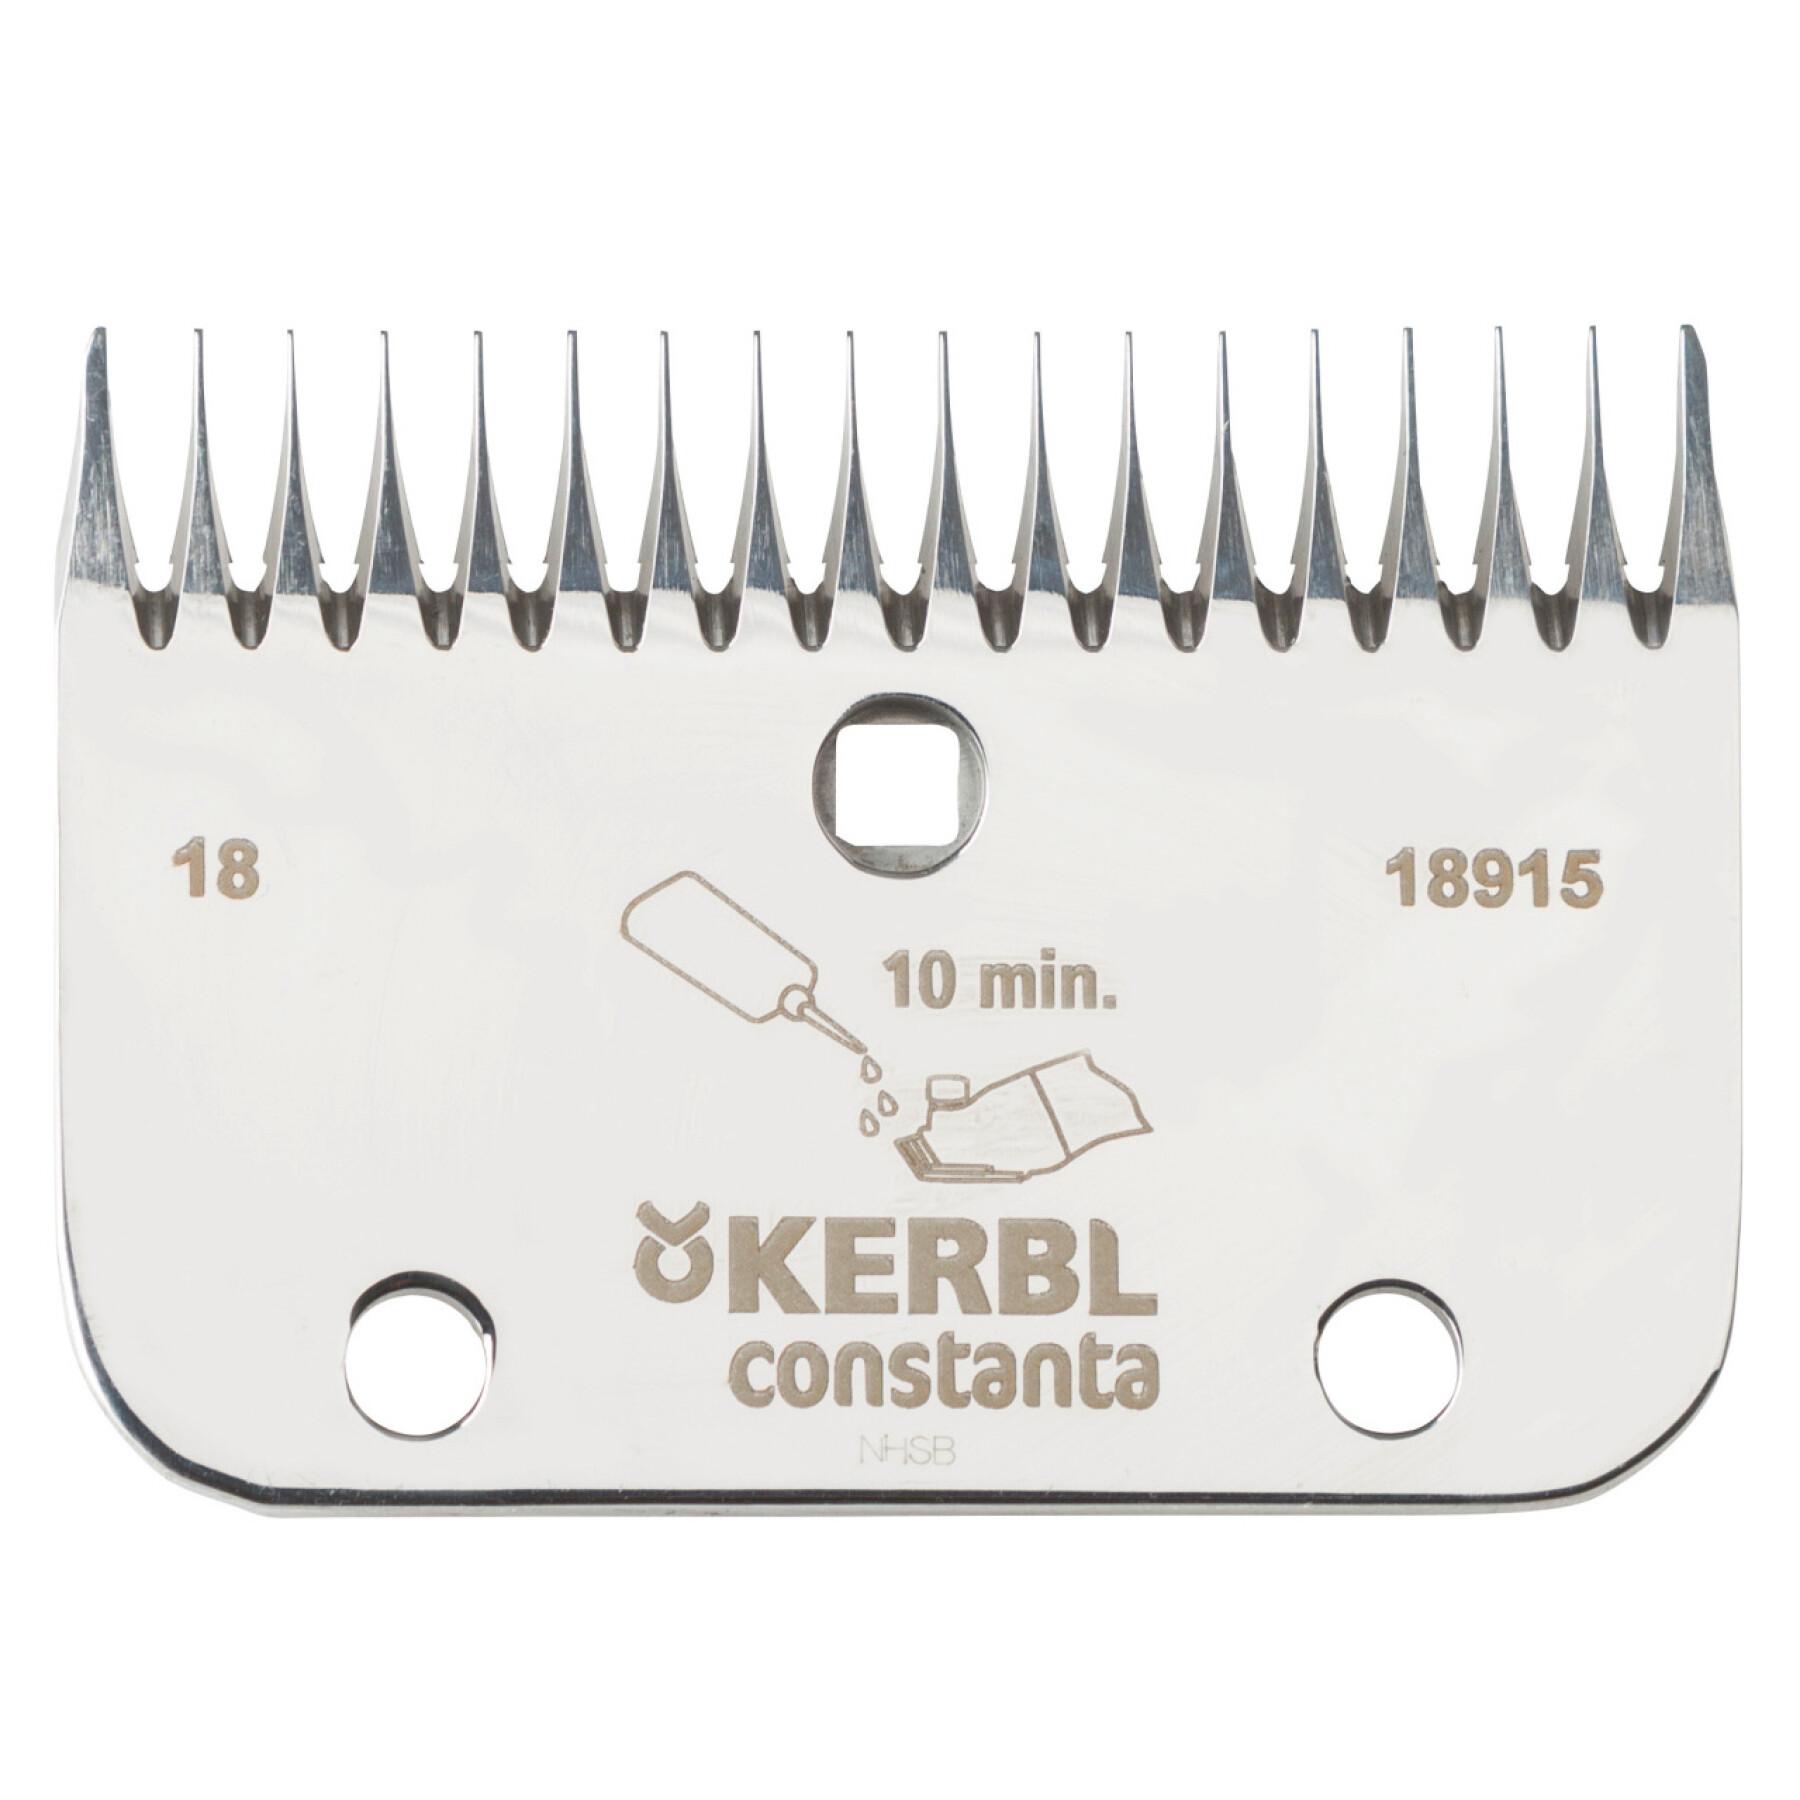 Pente para cortador de relva 18/24 dentes Kerbl Constanta R6